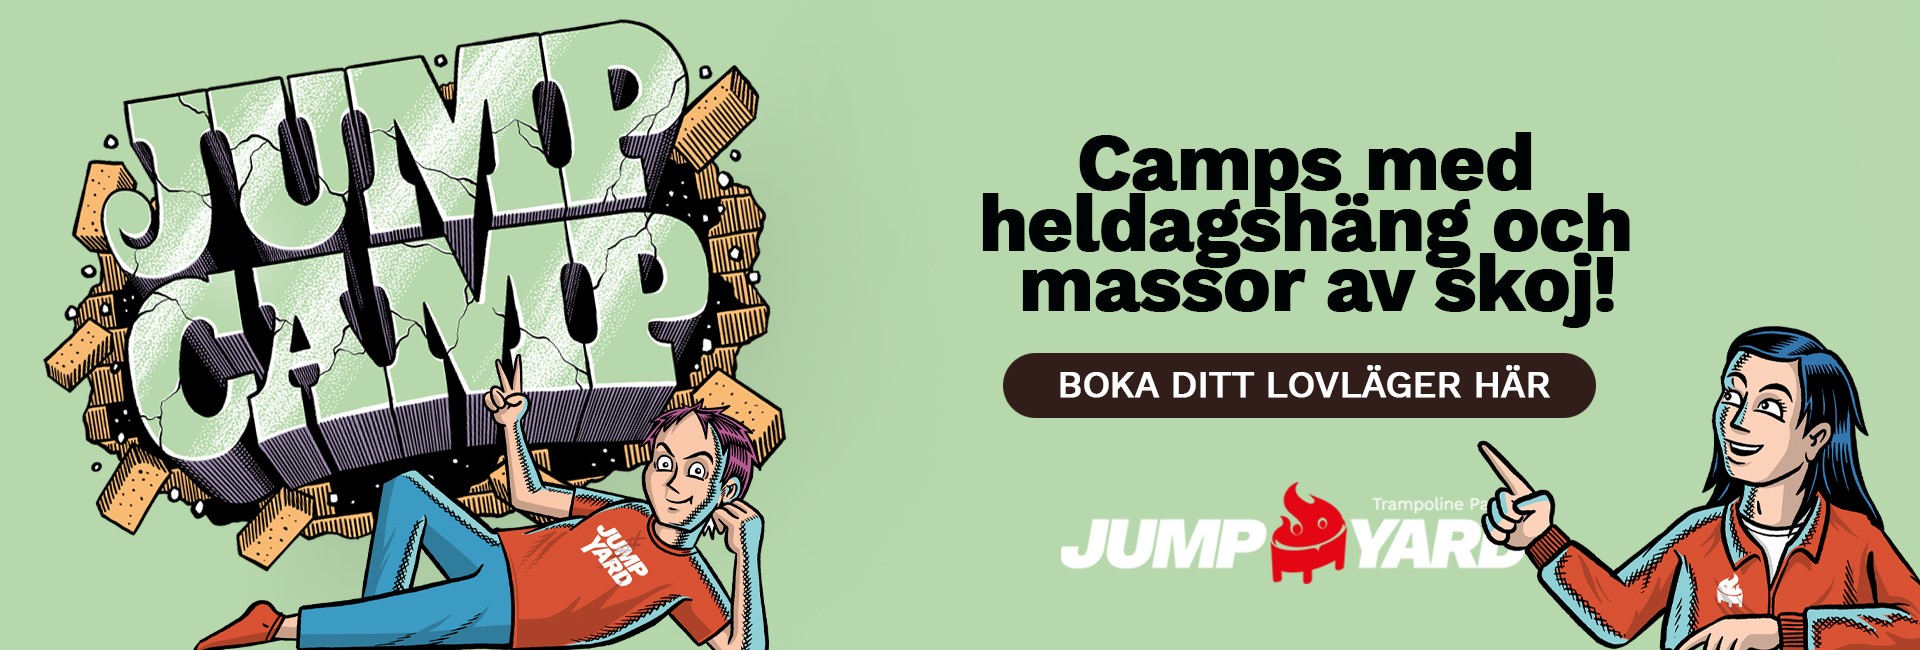 JumpCamp Kungsbacka nyhetsbrev